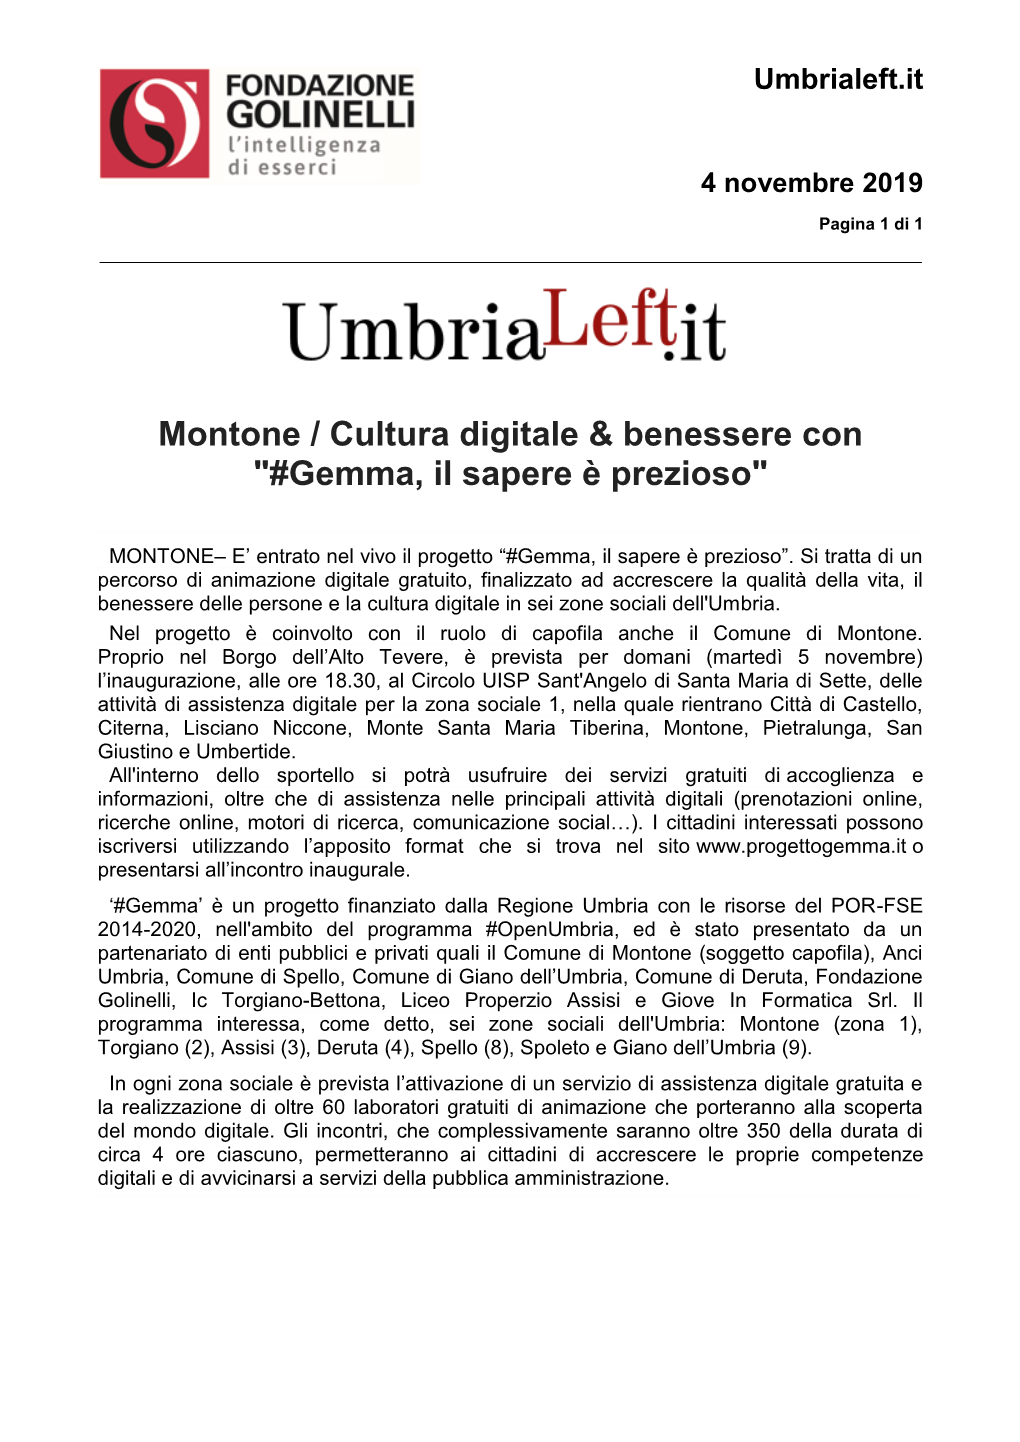 Montone / Cultura Digitale & Benessere